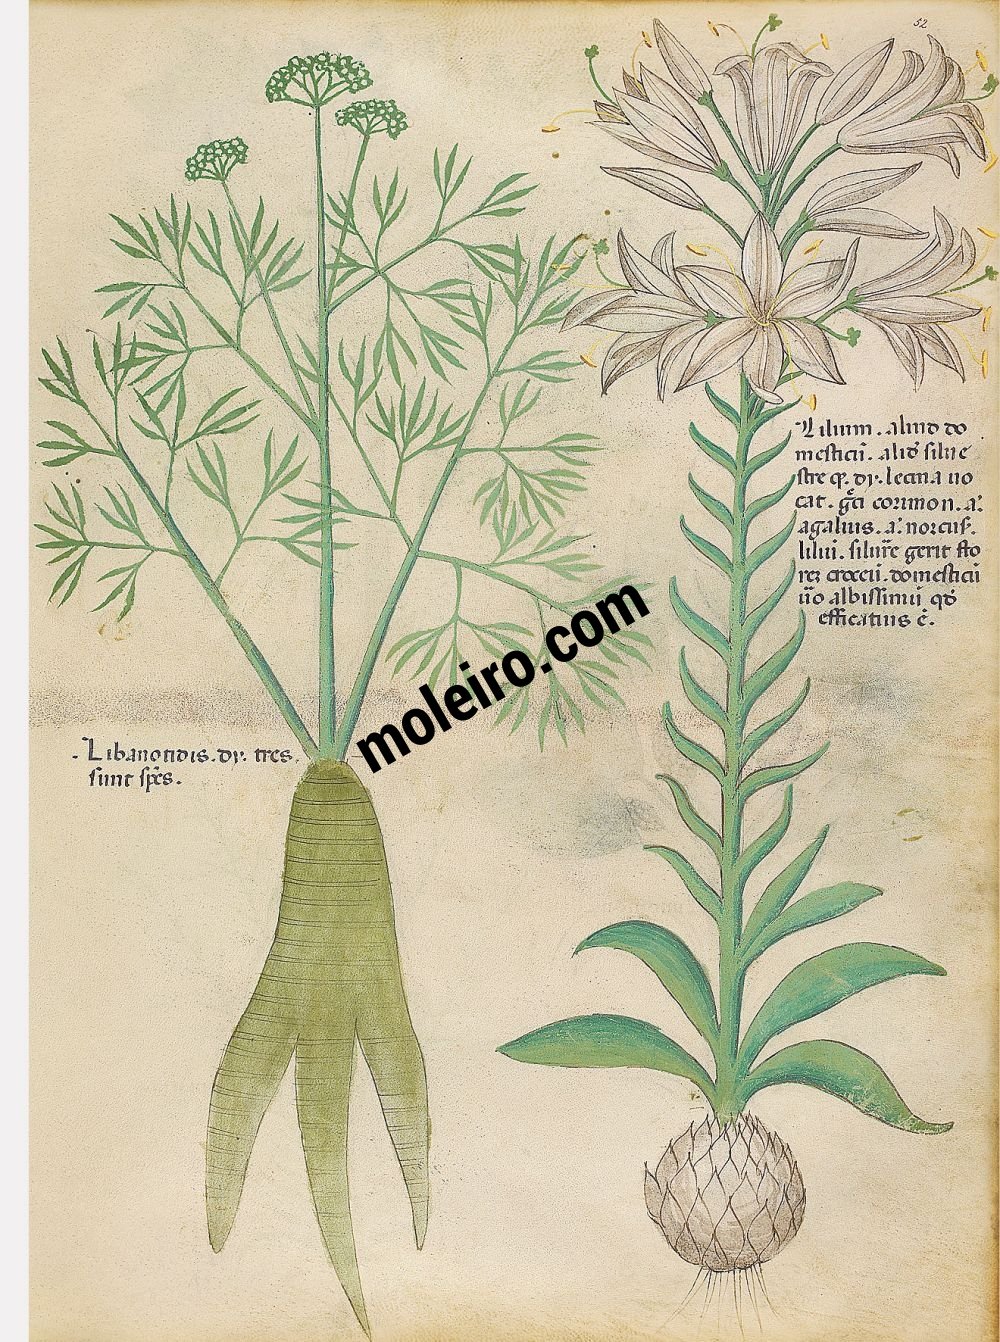 f. 52r, Iris; orobanche libanotidis. Tratado de plantas medicinales. Tractatus de Herbis - Sloane 4016
The British Library, Londres